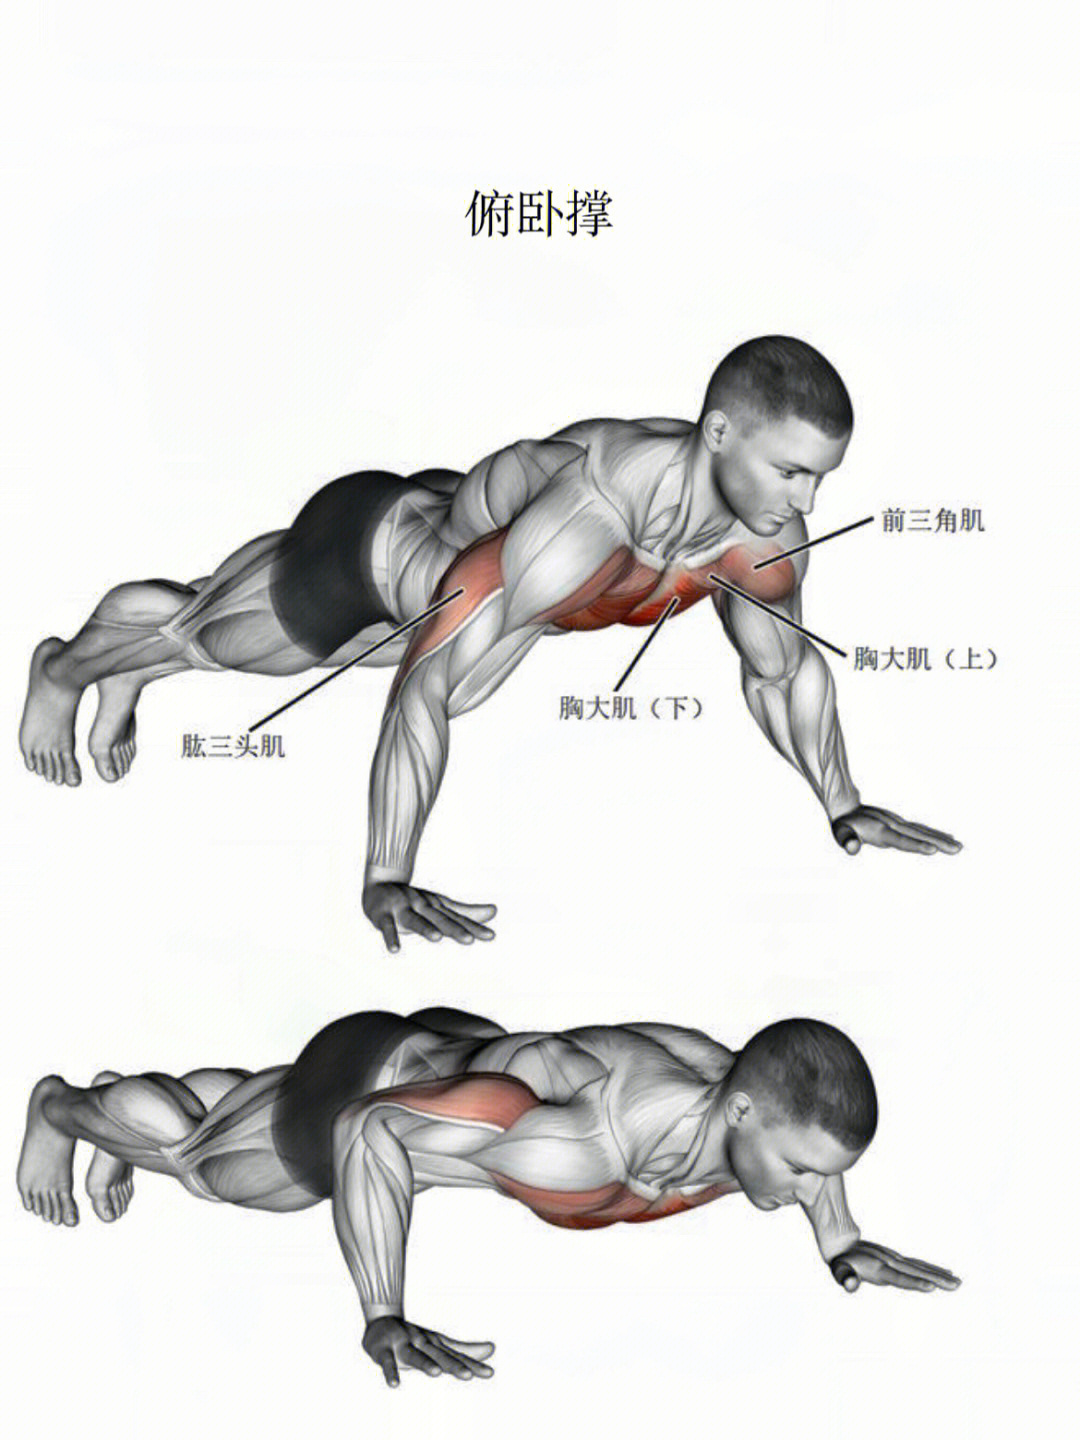 今日动作分享:俯卧撑训练肌肉部位:胸大肌,股三头肌,三角肌前束01